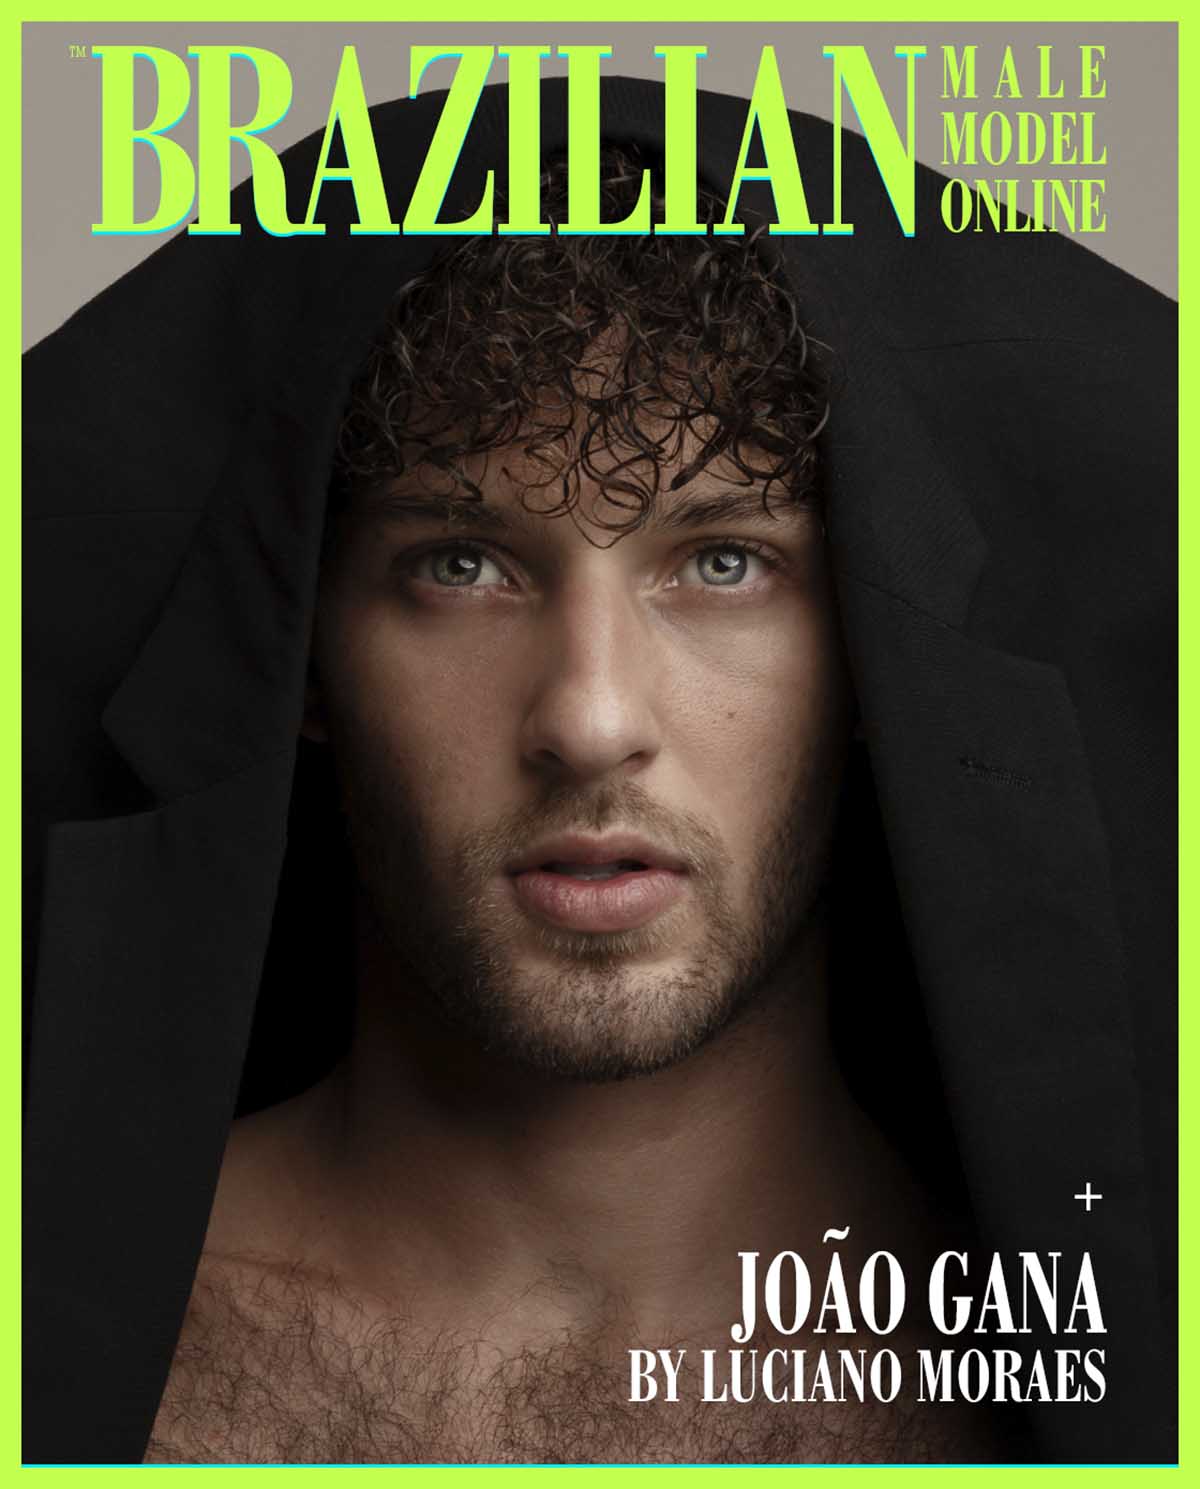 João Gana by Luciano Moraes